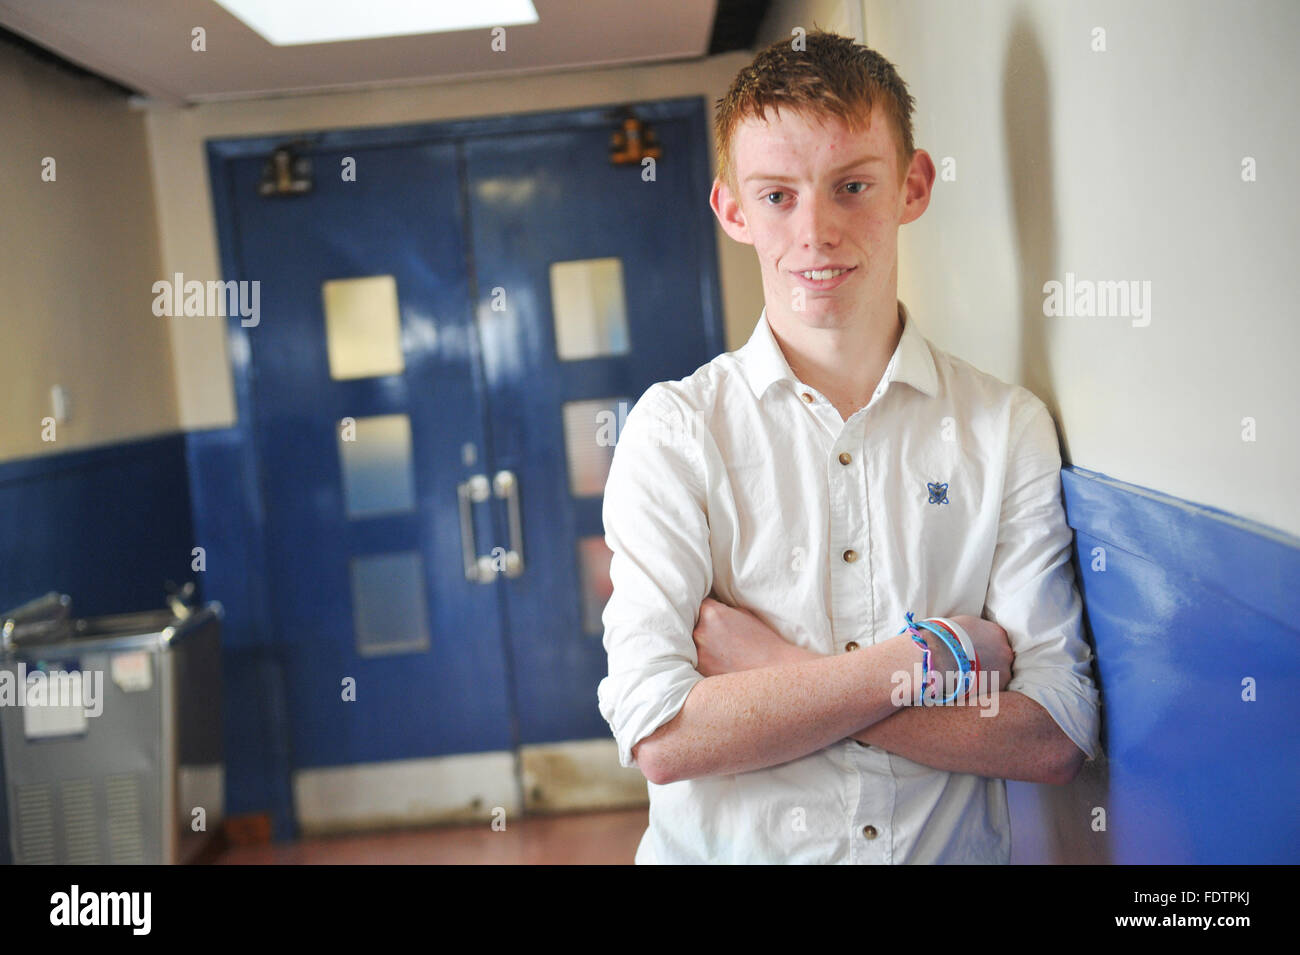 Ginger boy élève de l'école pose dans le couloir. Banque D'Images